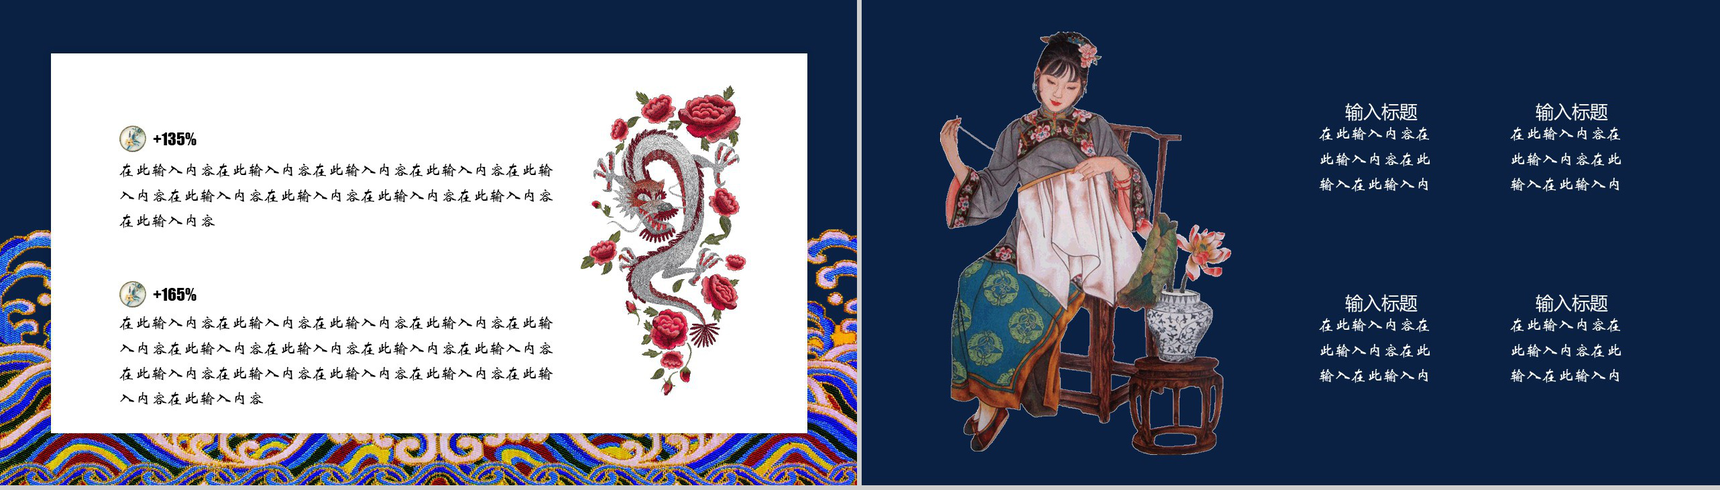 中国之美刺绣传统手艺PPT模板-6